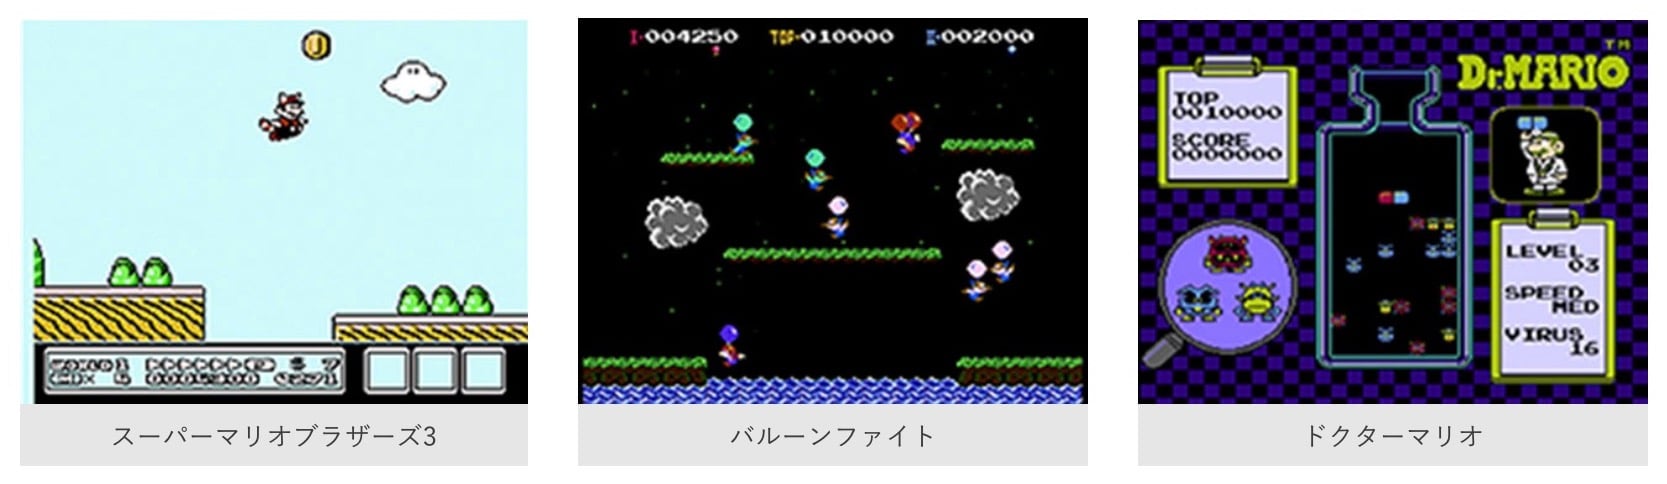 任天堂、月額300円の「Nintendo Switch Online」を9月に開始予定